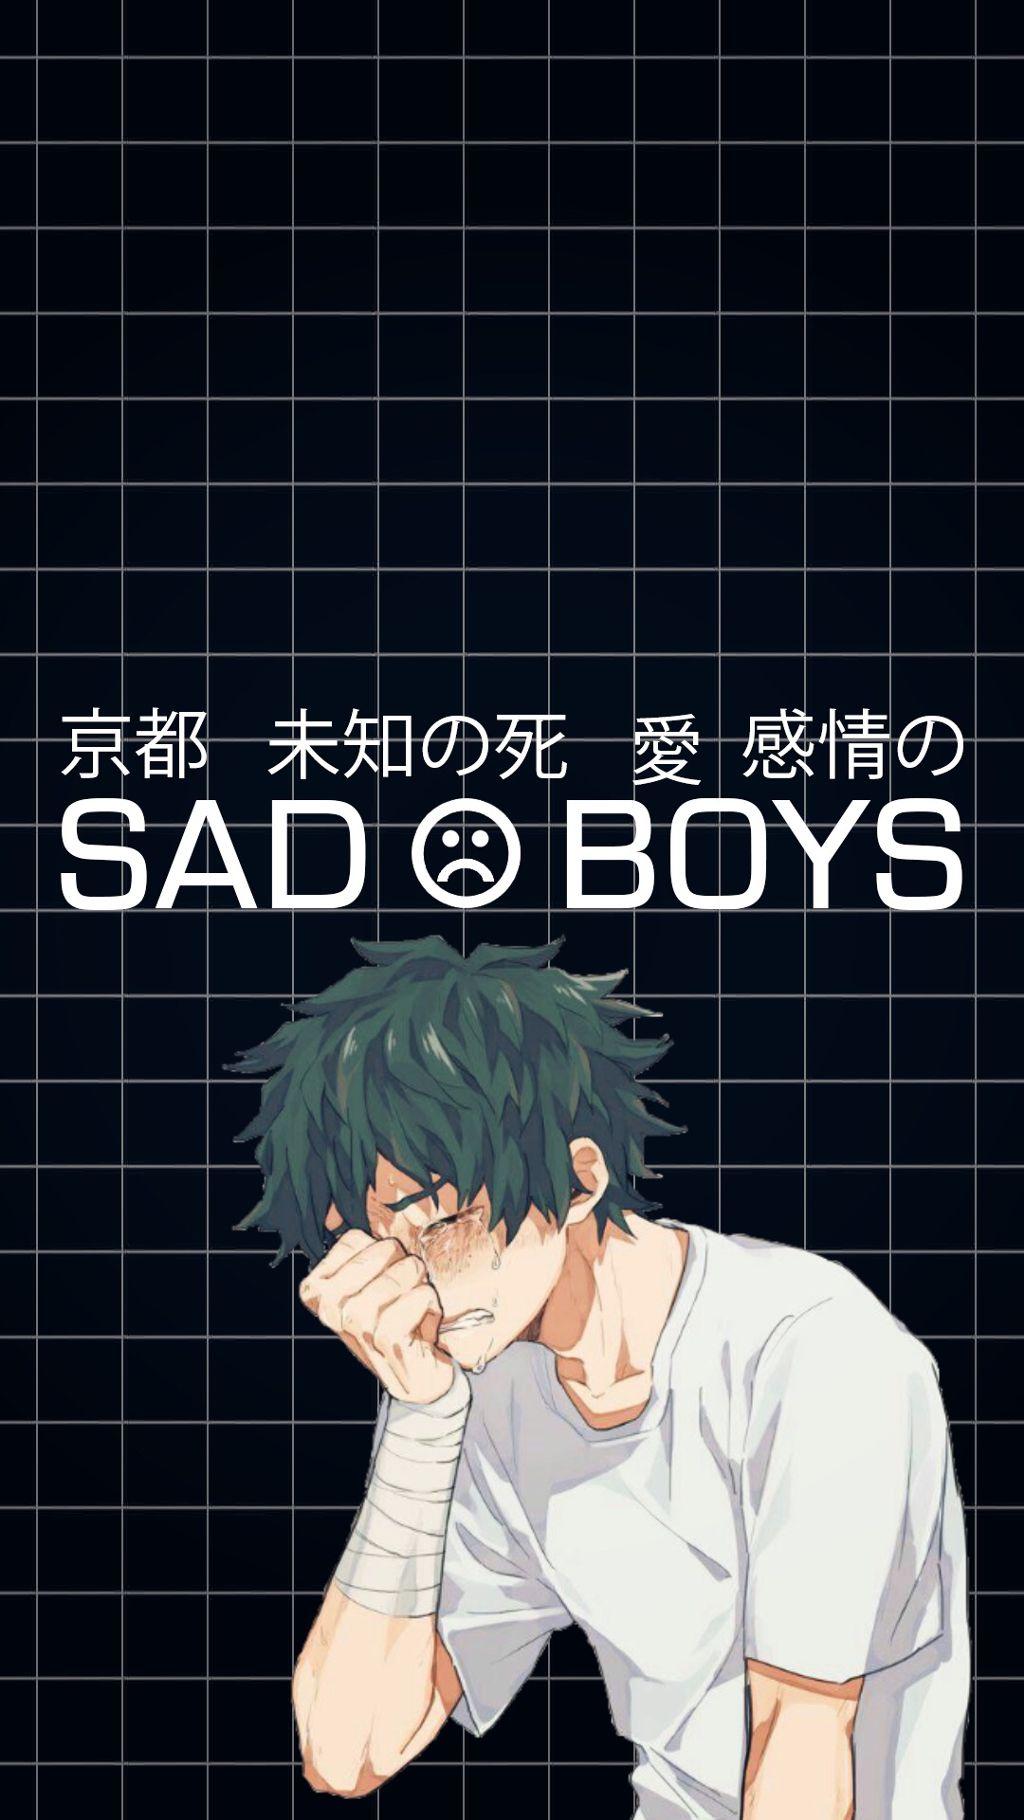 Sad Boys Anime Supreme Wallpapers - Wallpaper Cave